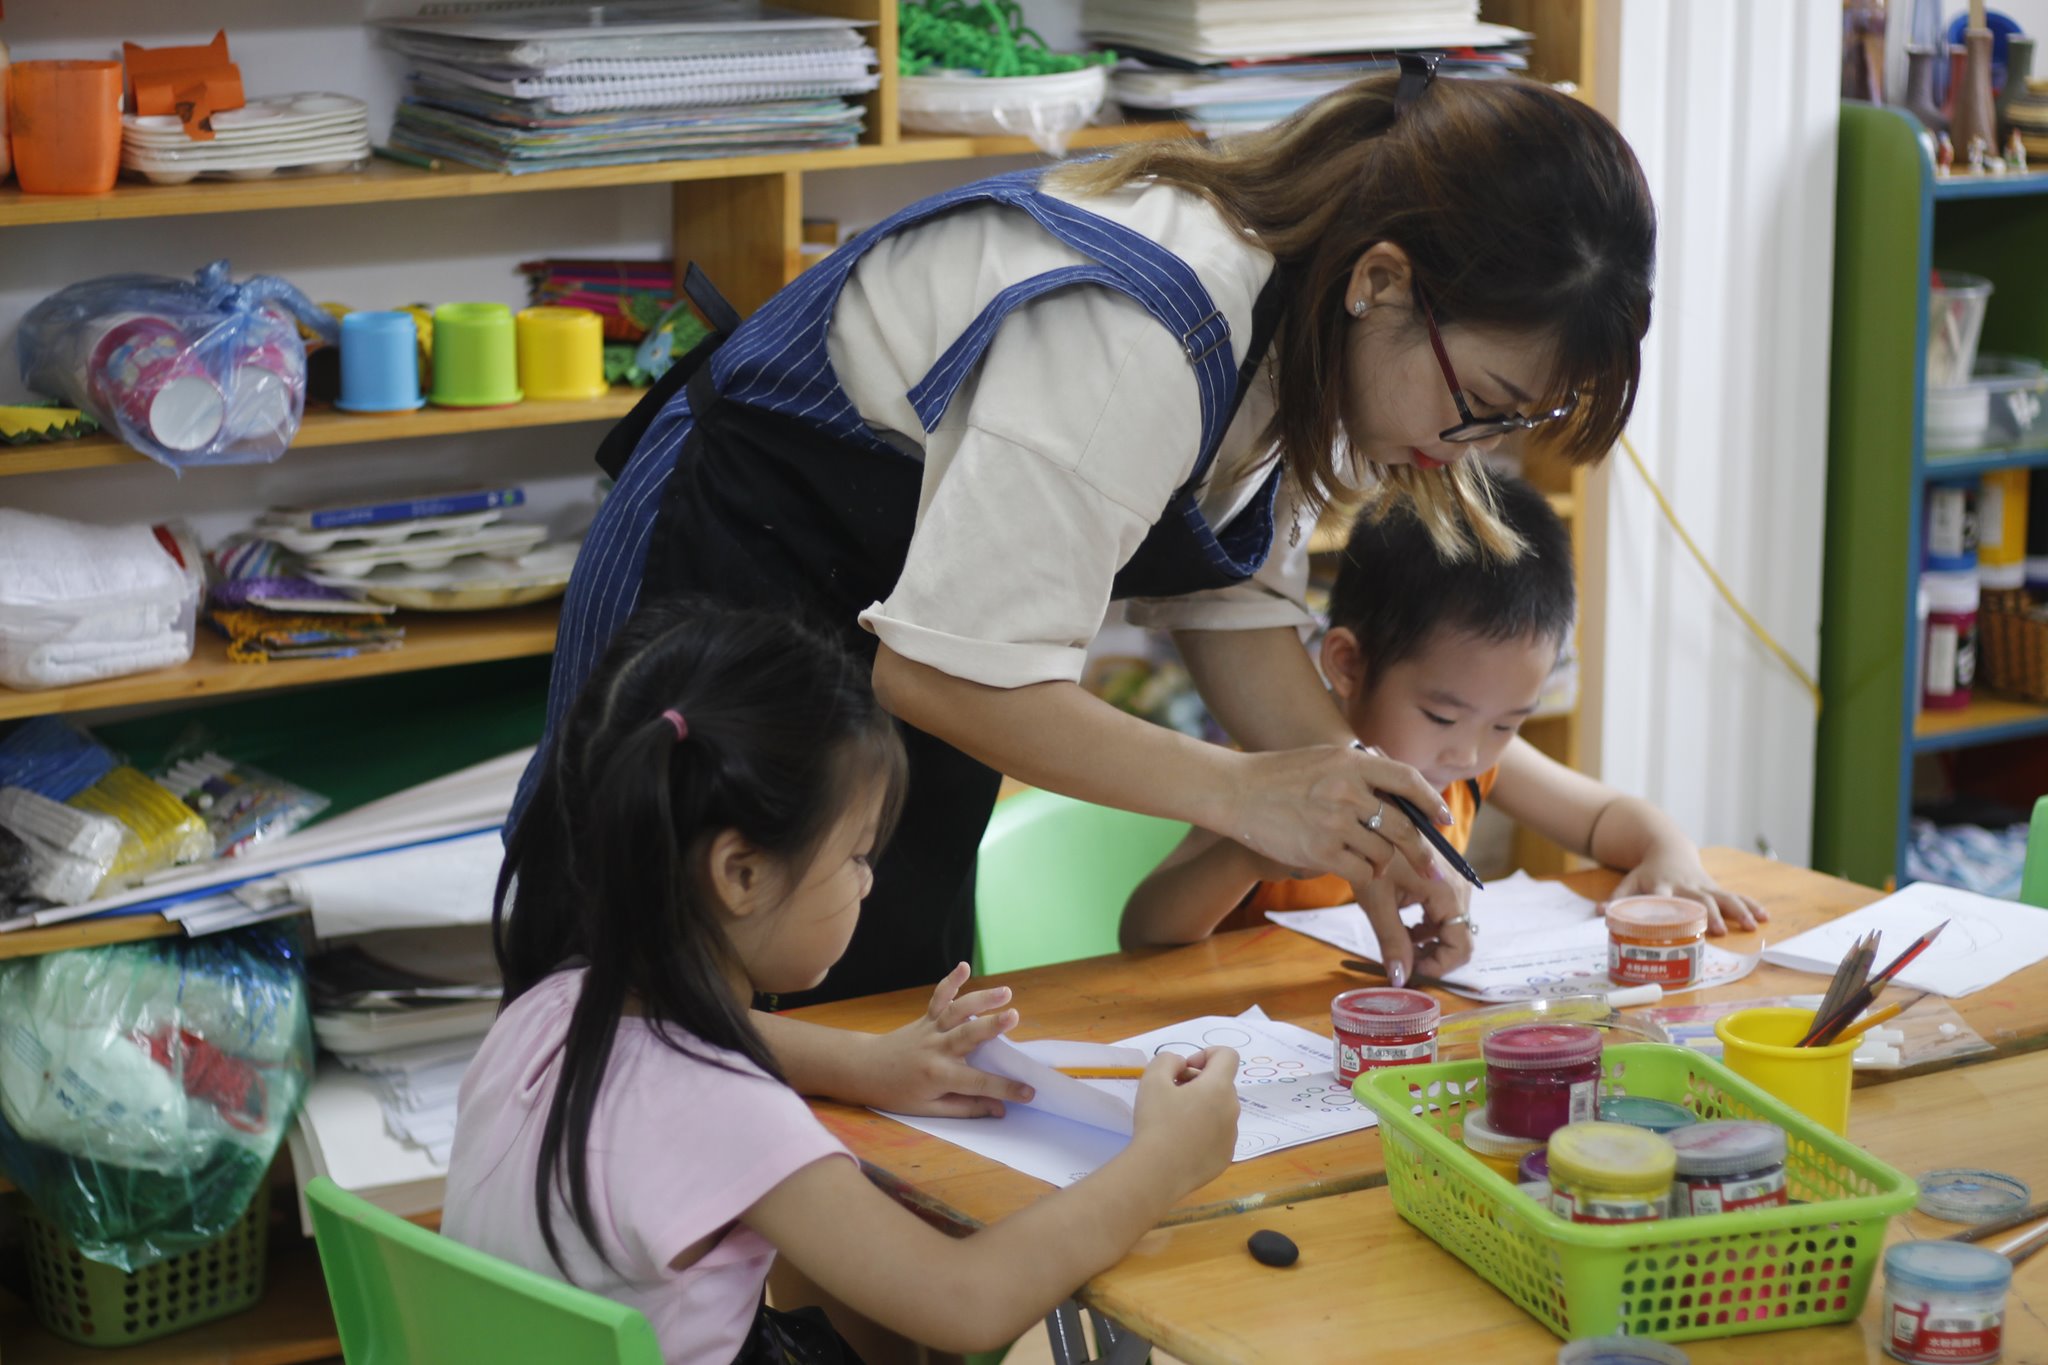 Trình tự các bước trong quá trình dạy học vẽ cho trẻ em  Kids ArtMusic  Saigon